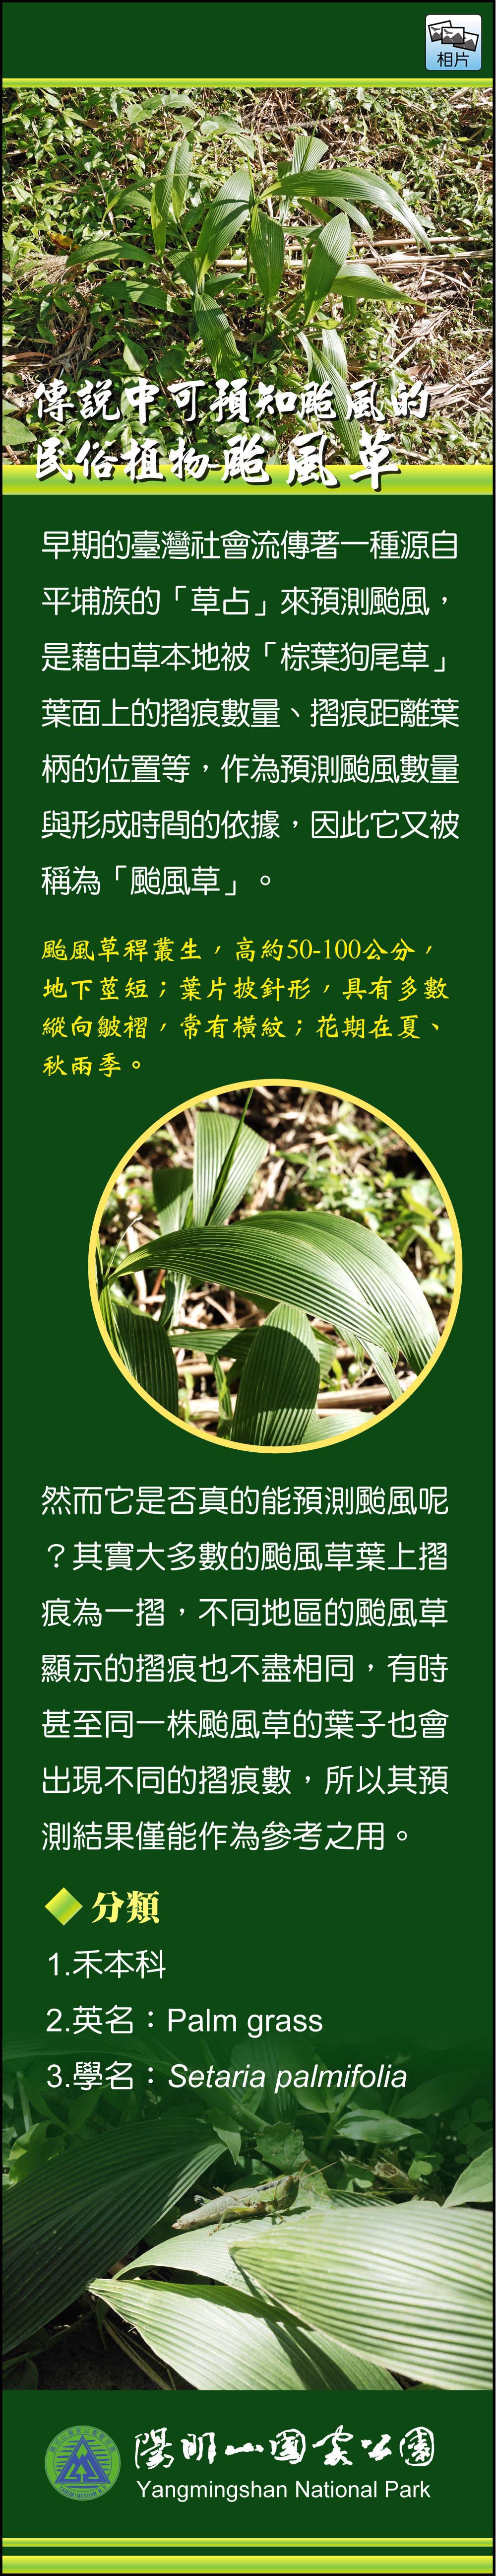 傳說中可預知颱風的民俗植物-颱風草